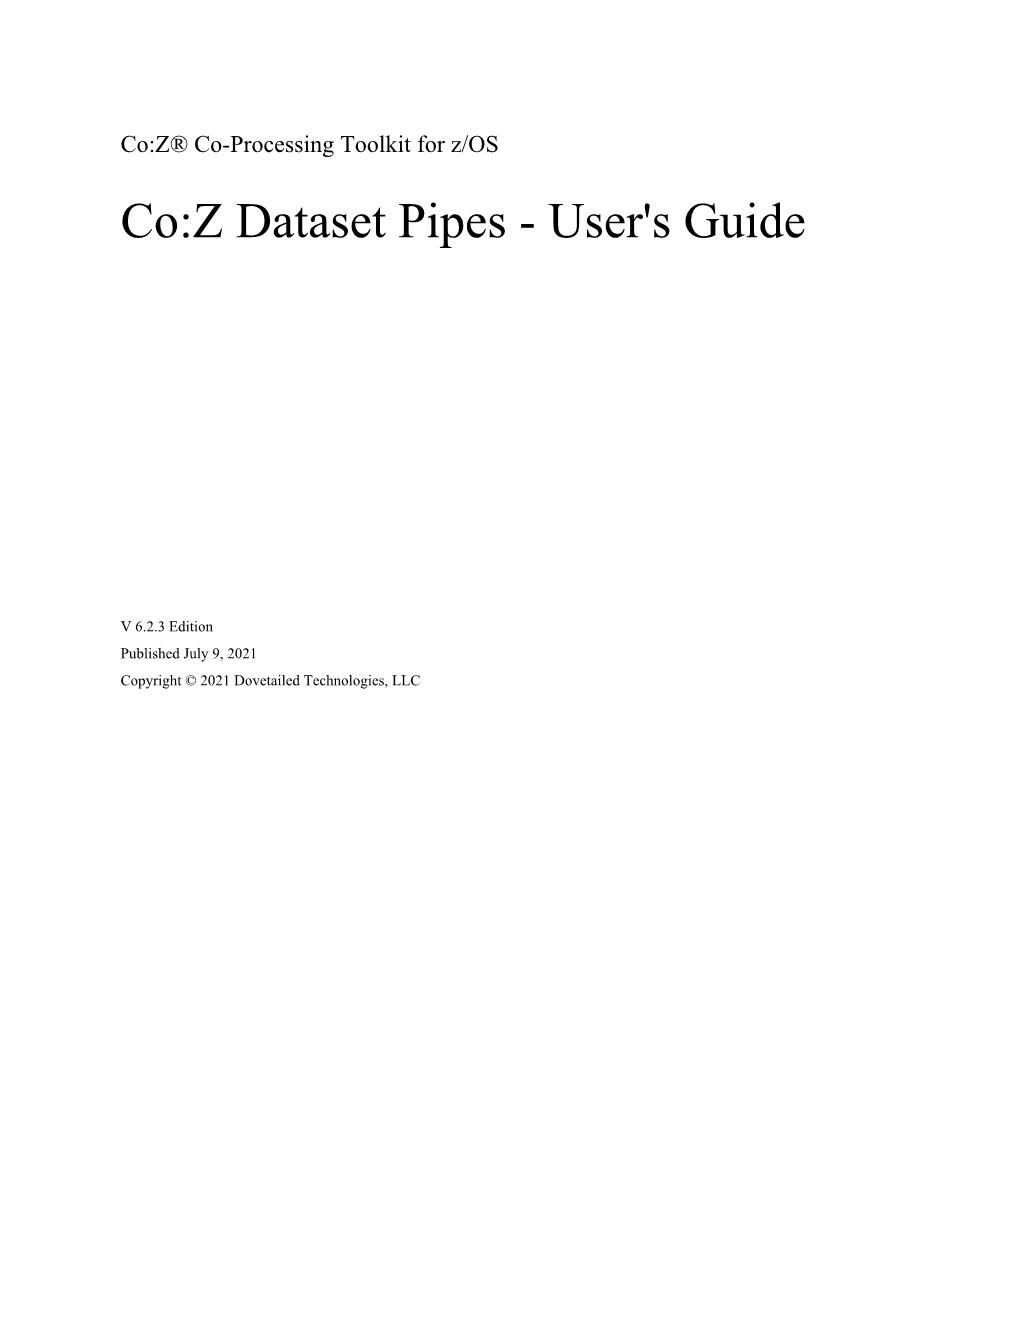 Co:Z Dataset Pipes - User's Guide